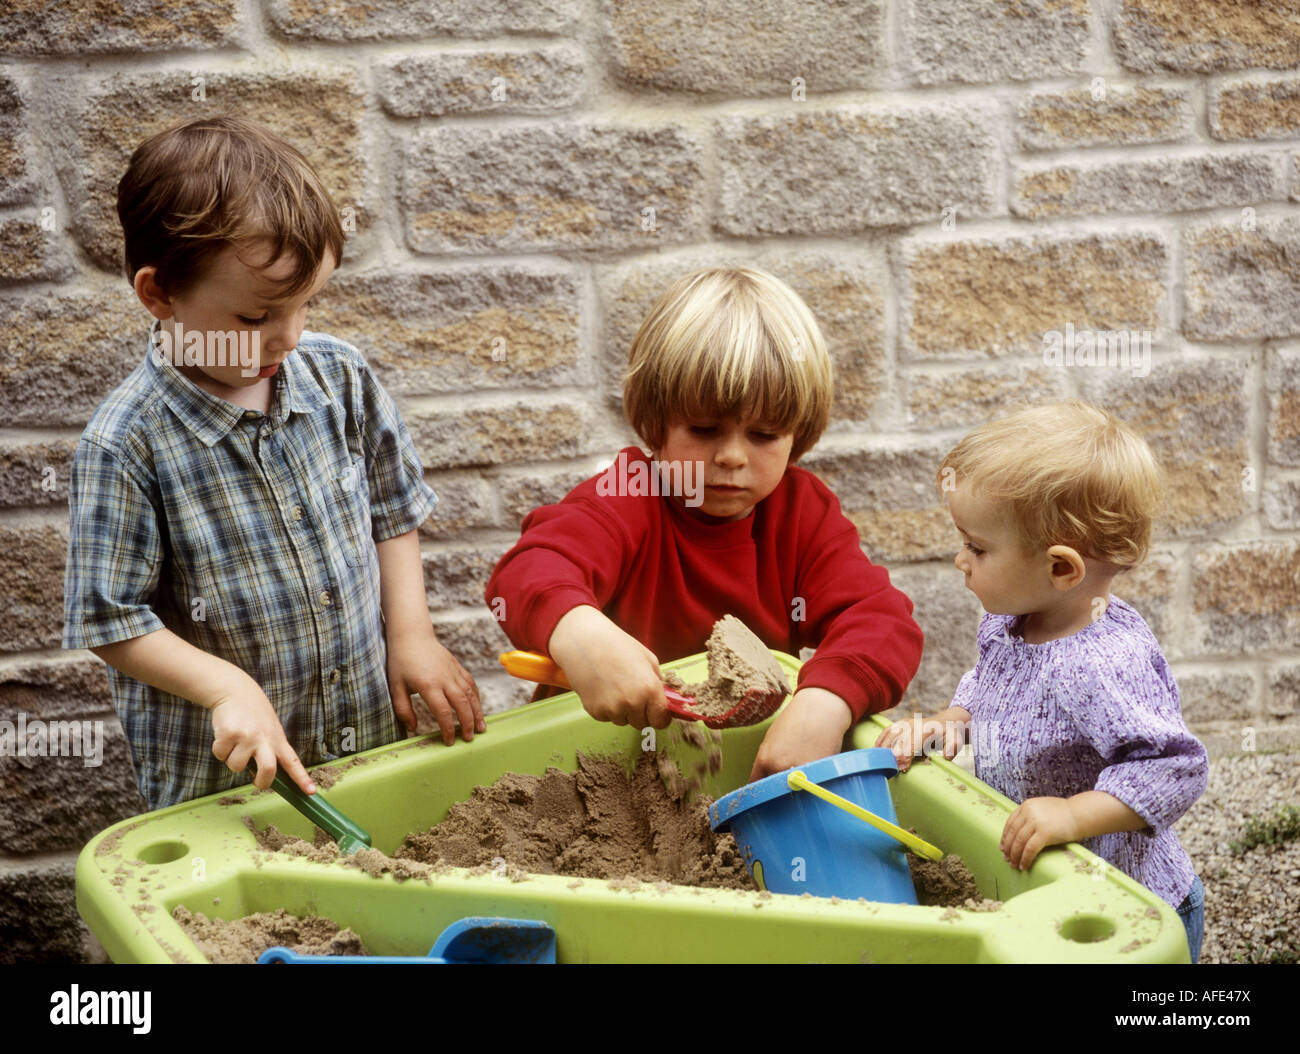 Kleine Kinder spielen mit einem Kunststoff Spaten und Containern in einem Sand Tablett Stockfoto